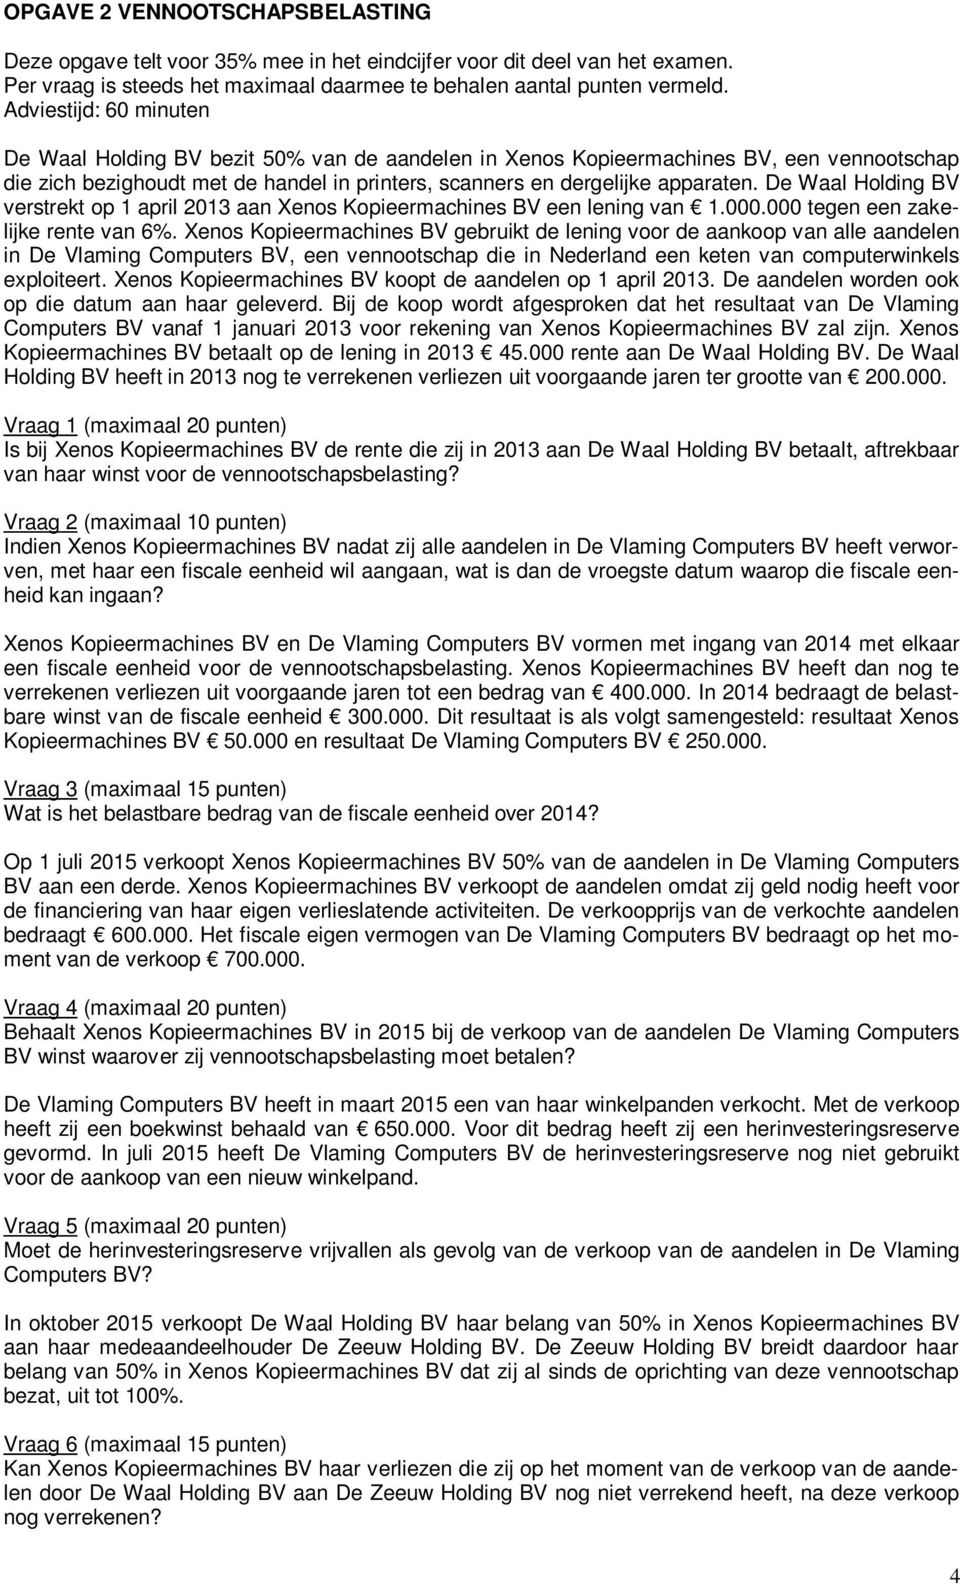 De Waal Holding BV verstrekt op 1 april 2013 aan Xenos Kopieermachines BV een lening van 1.000.000 tegen een zakelijke rente van 6%.